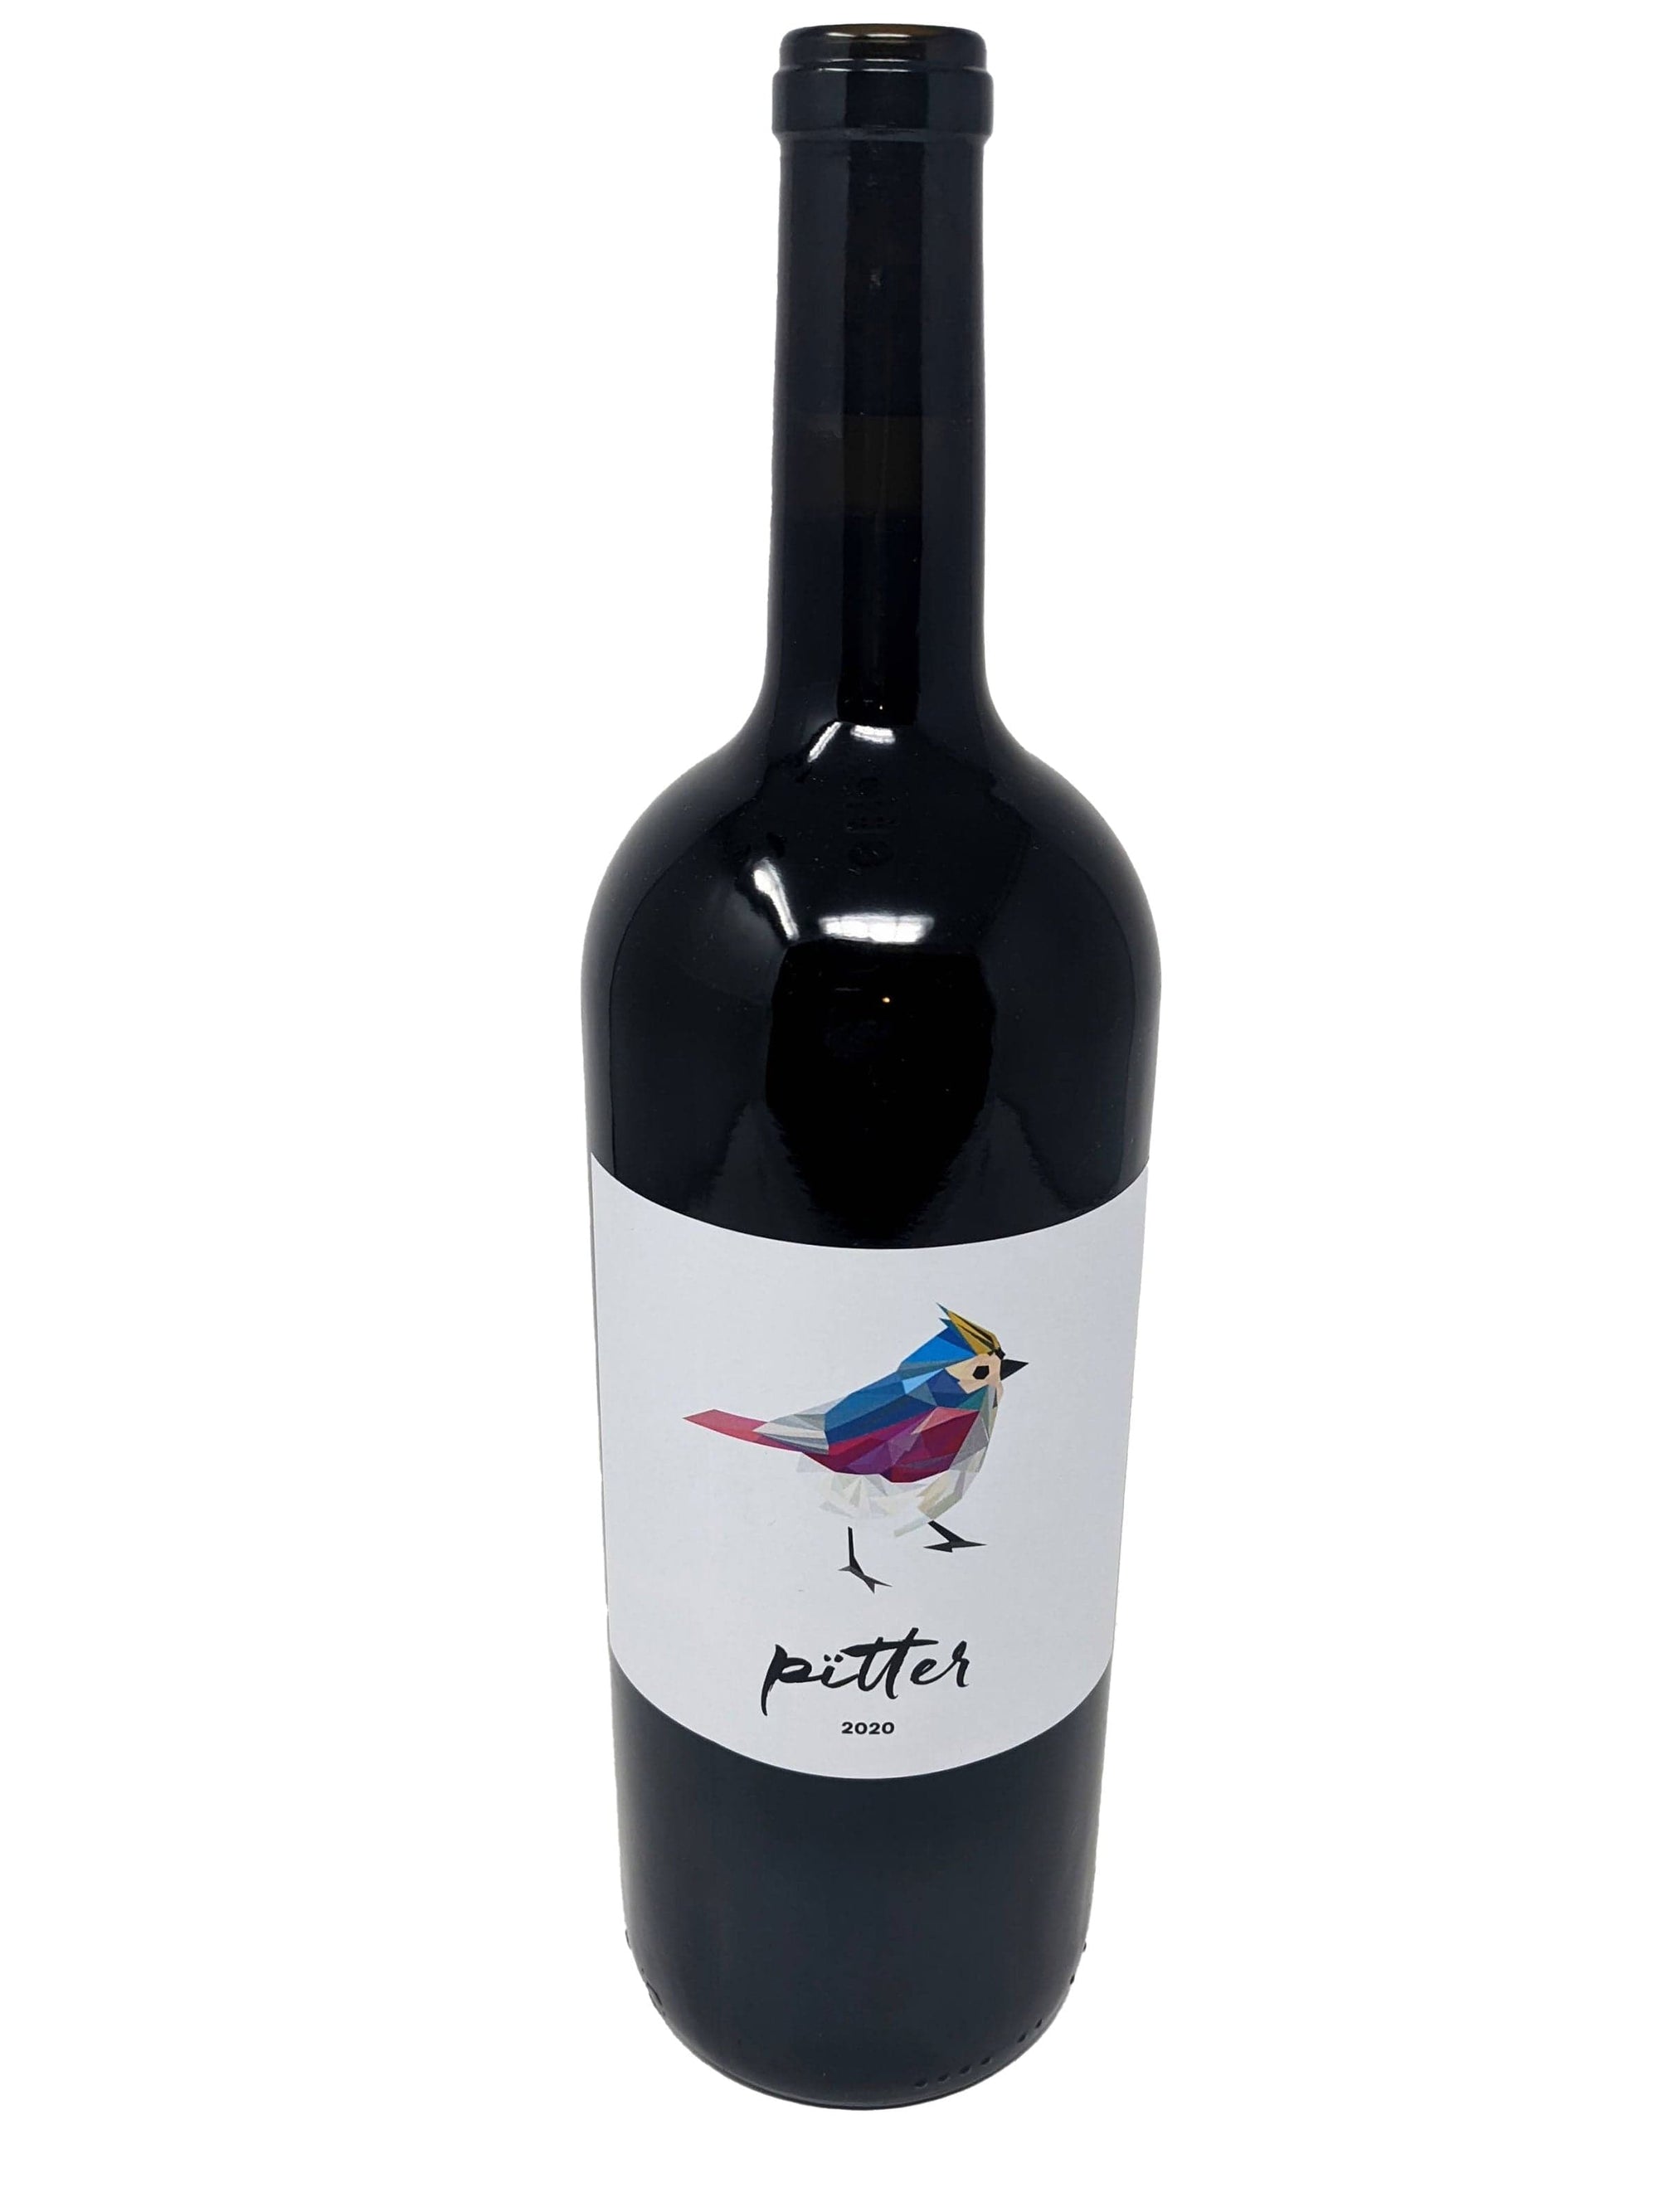 Vignoble l'Ardennais vin Pïtter MAGNUM - Vin rouge du vignoble l'Ardennais